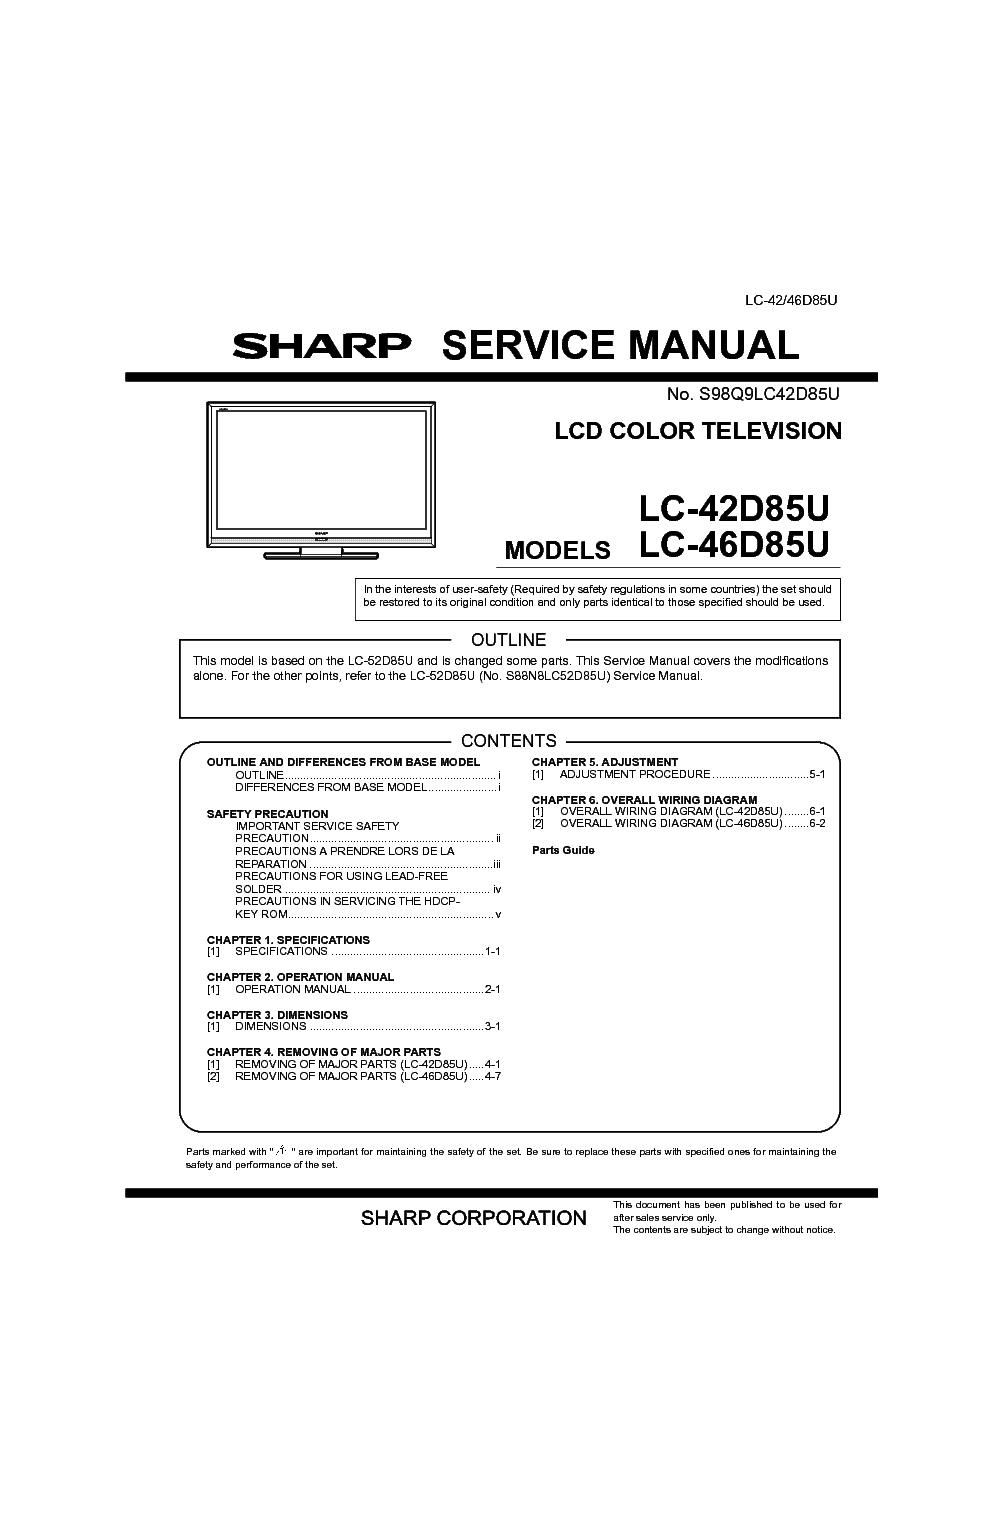 SHARP LC-42D85U 46D85U service manual (1st page)